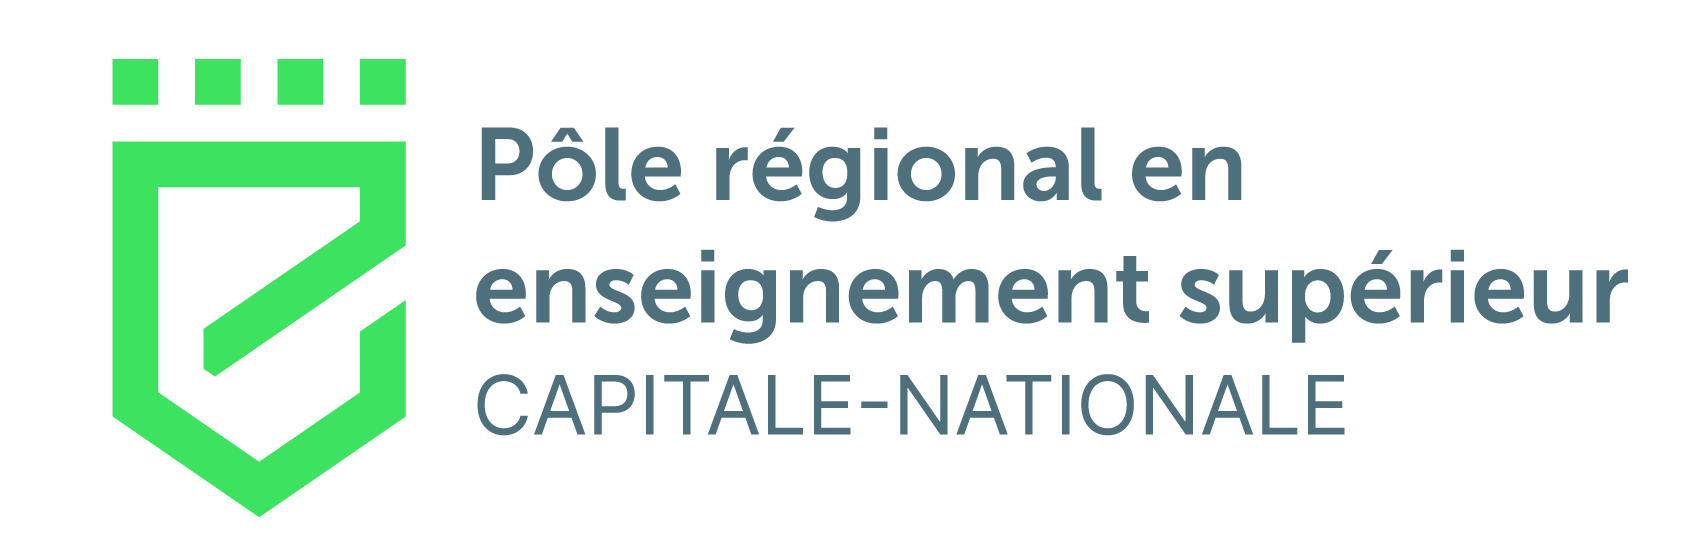 Pôle régional en enseignement supérieur CAPITALE NATIONALE